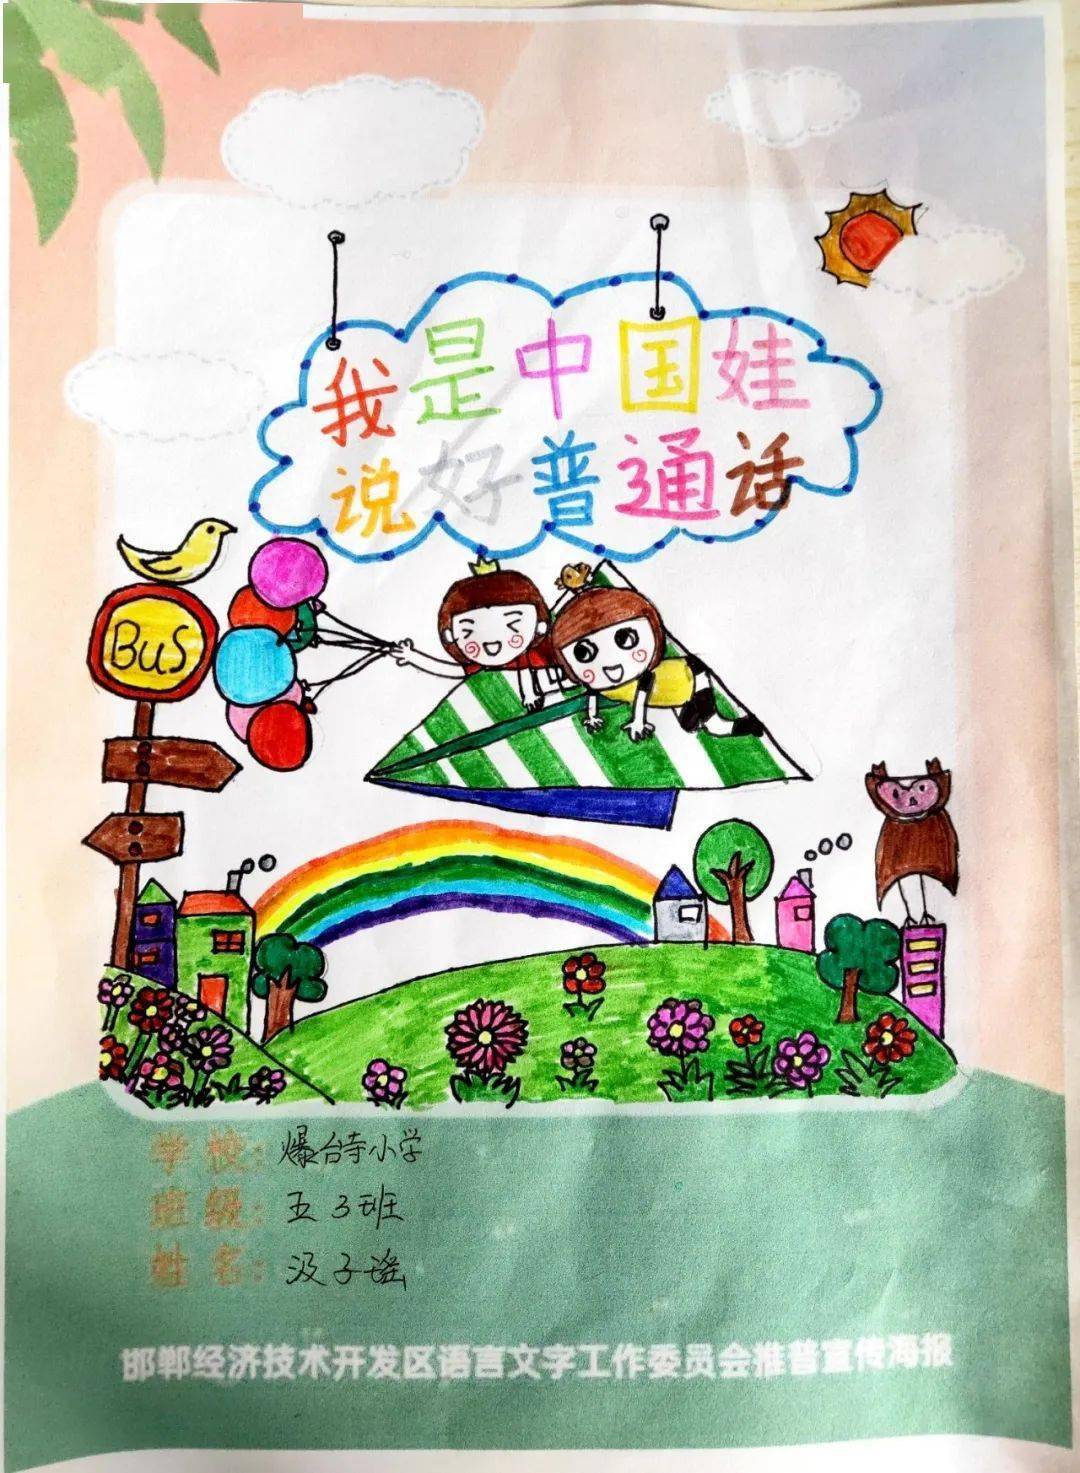 【语言文字】爆台寺小学开展推广普通话海报比赛